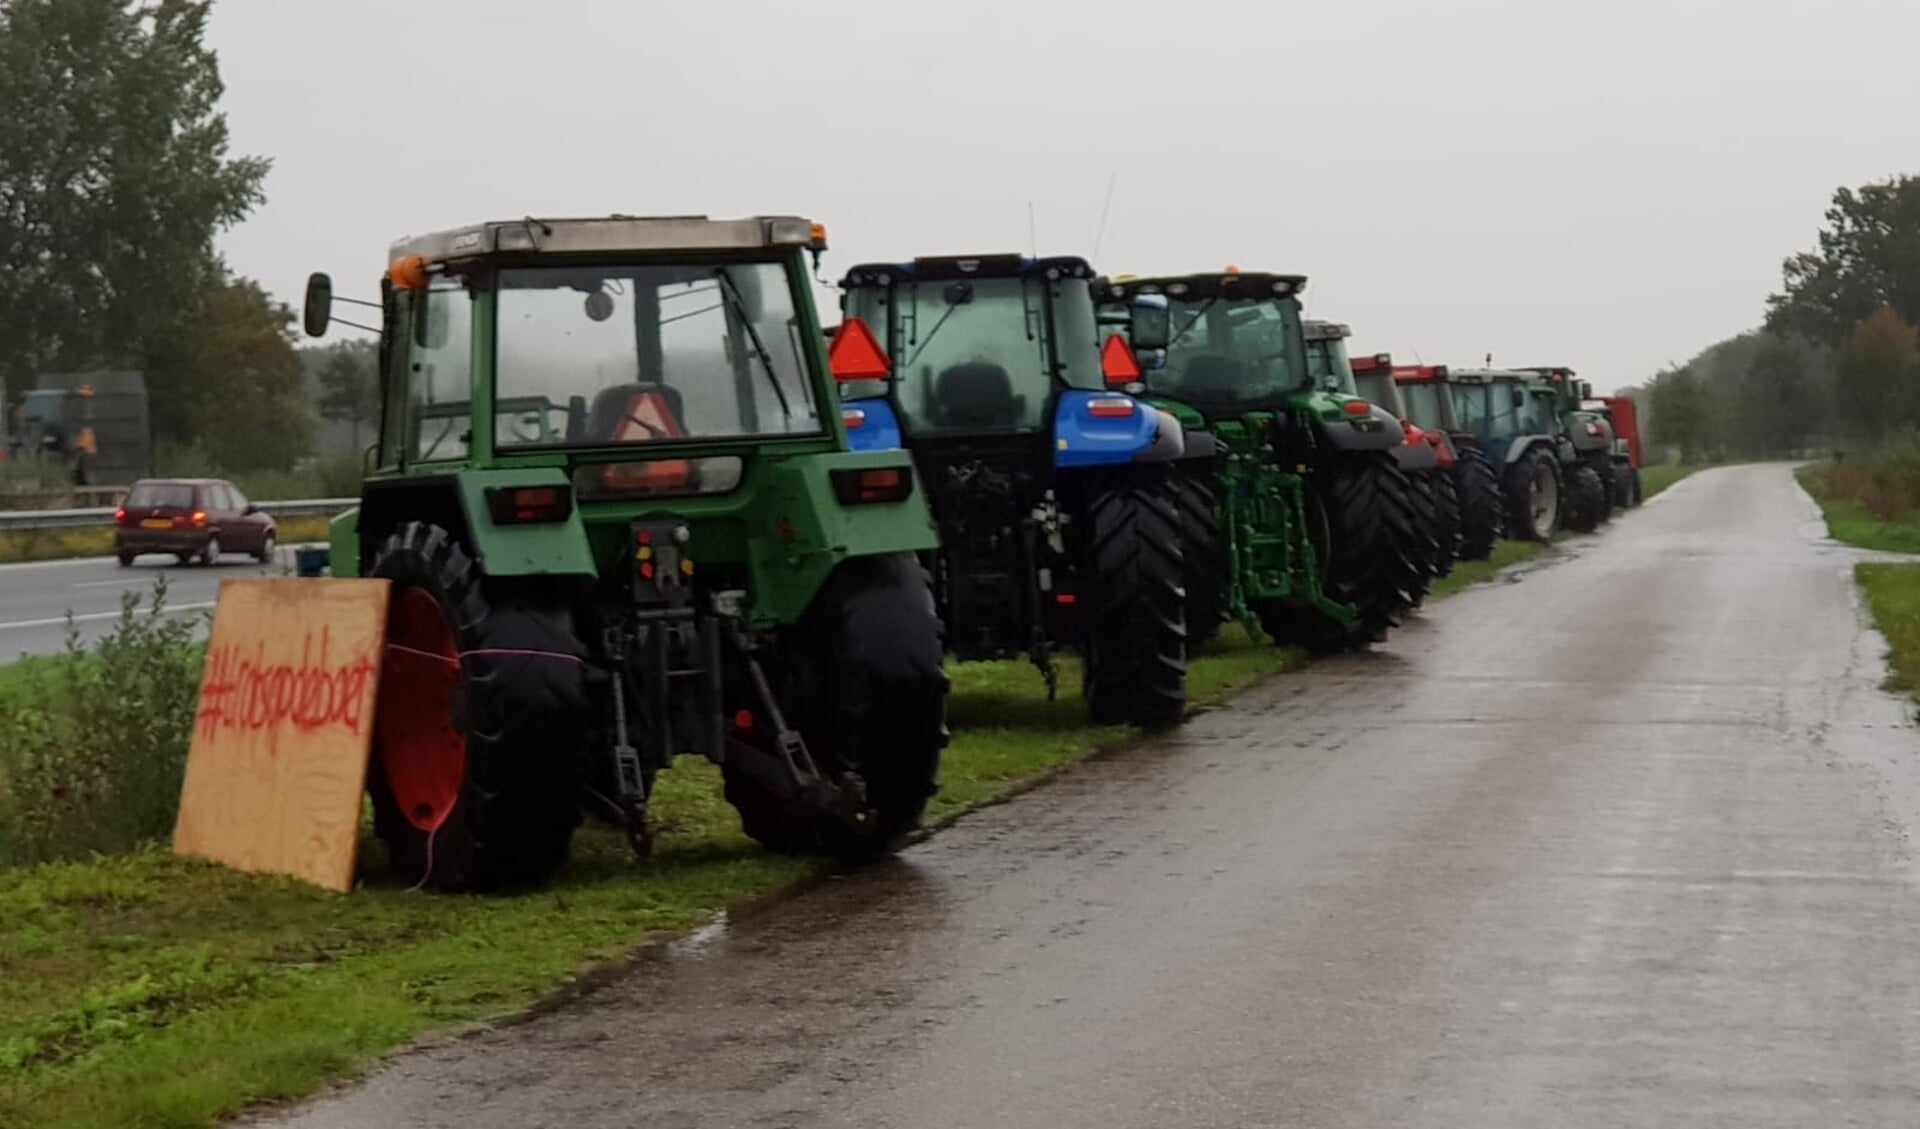 Aan de A50 staan deze landbouwvoertuigen geparkeerd.